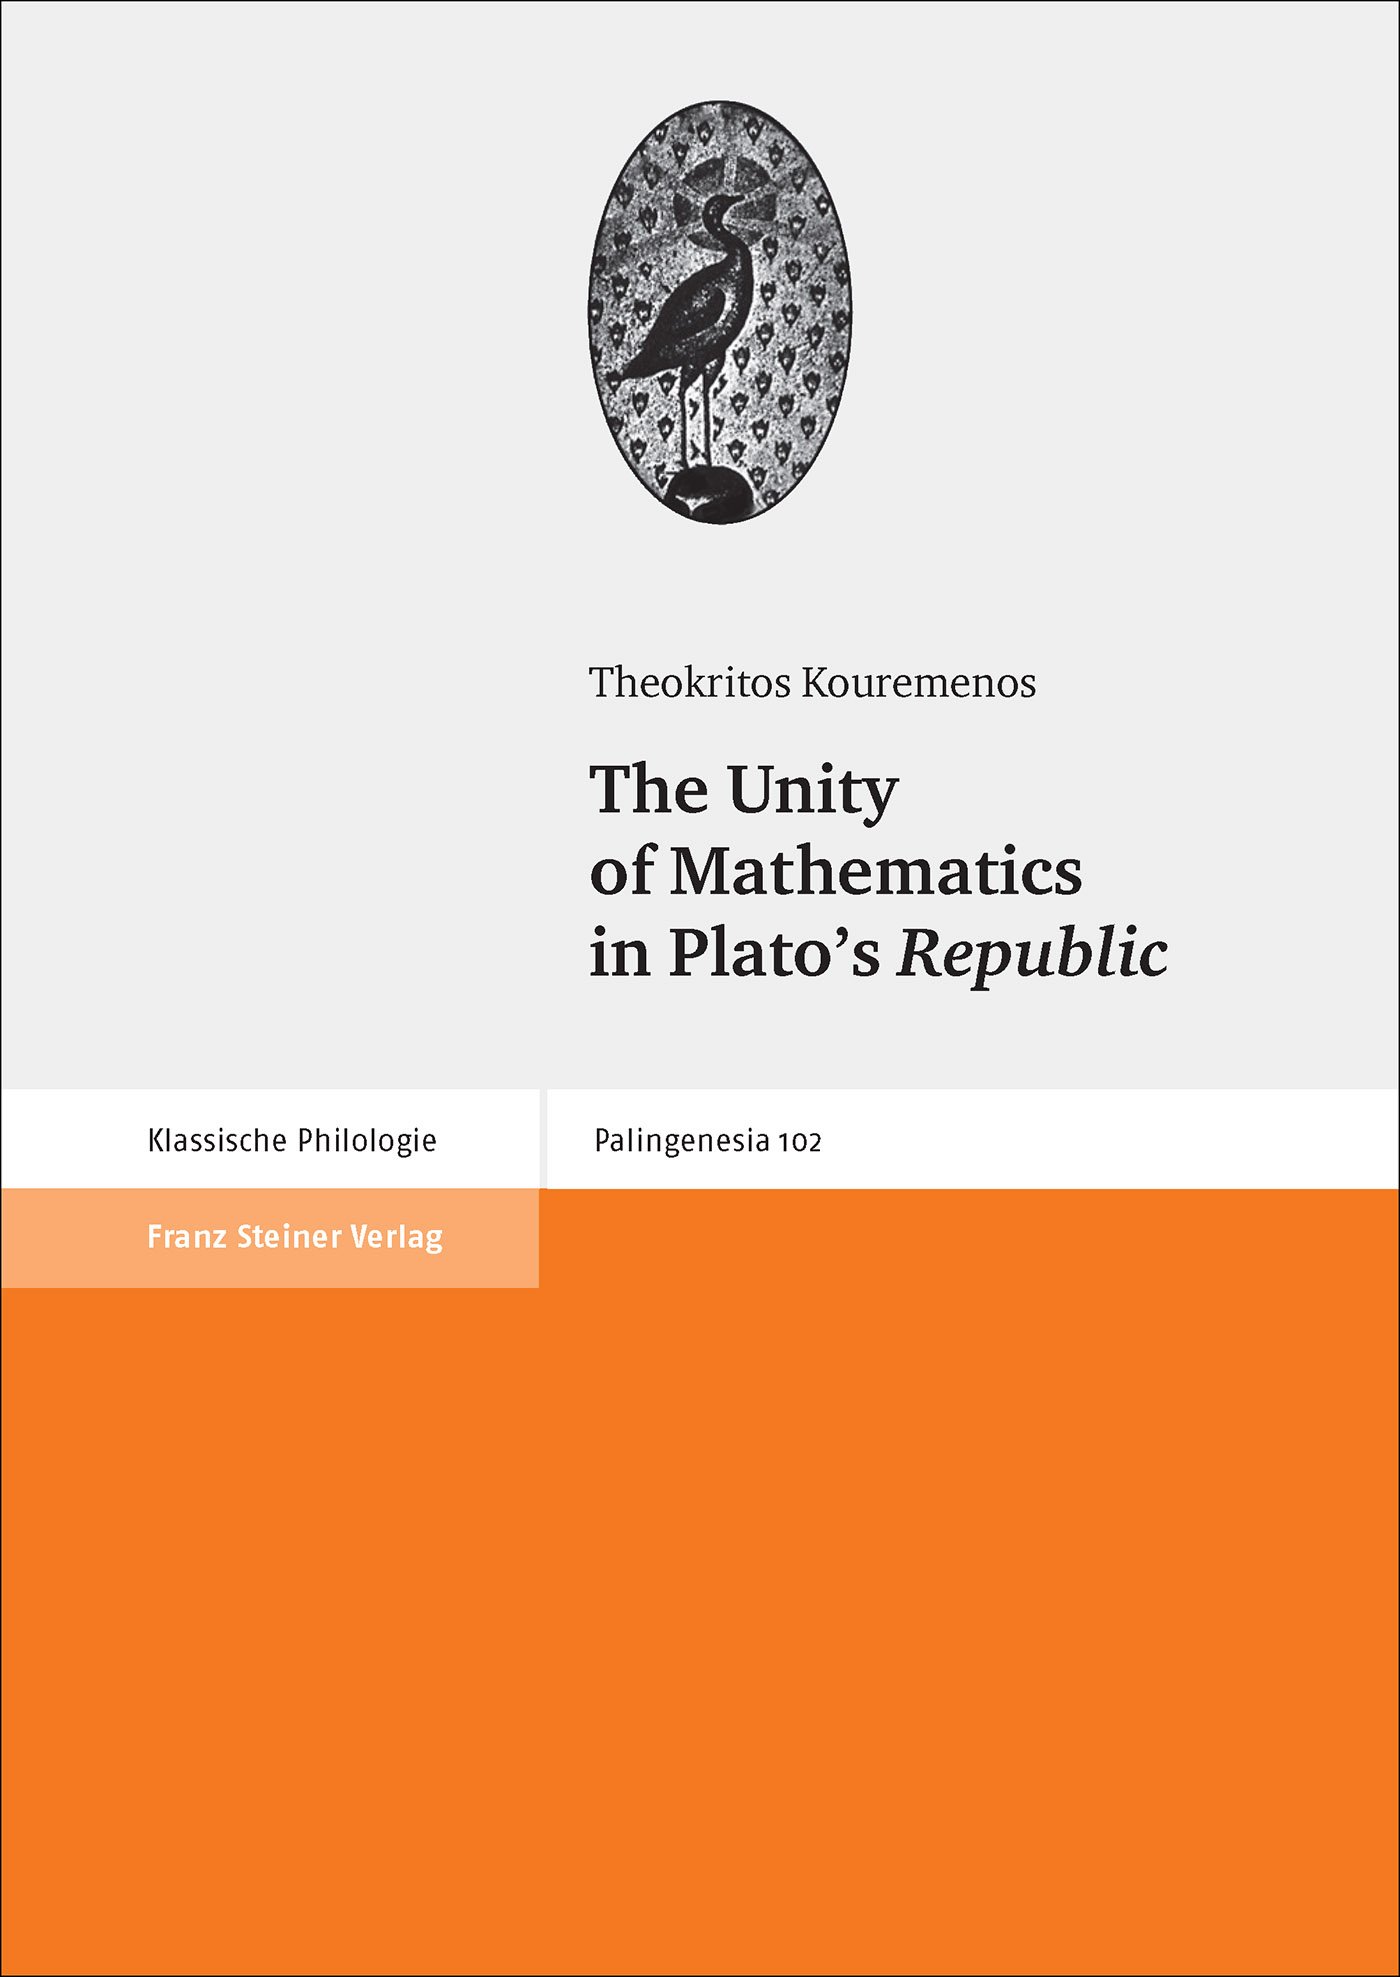 The Unity of Mathematics in Plato's "Republic"